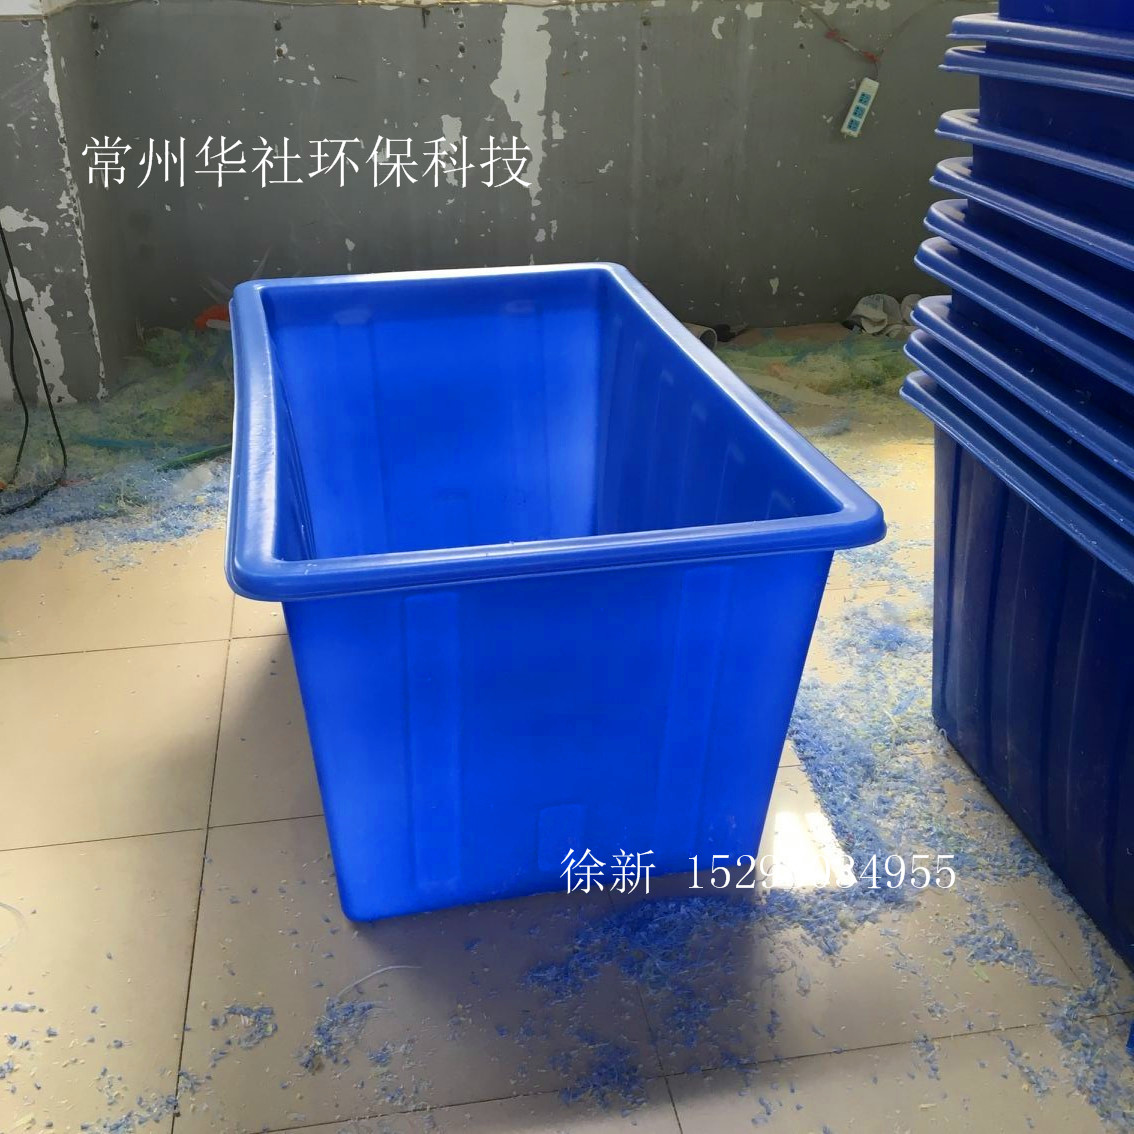 郑州化工吨桶厂家 IBC集装桶价格 化工运输桶价格 吨装桶